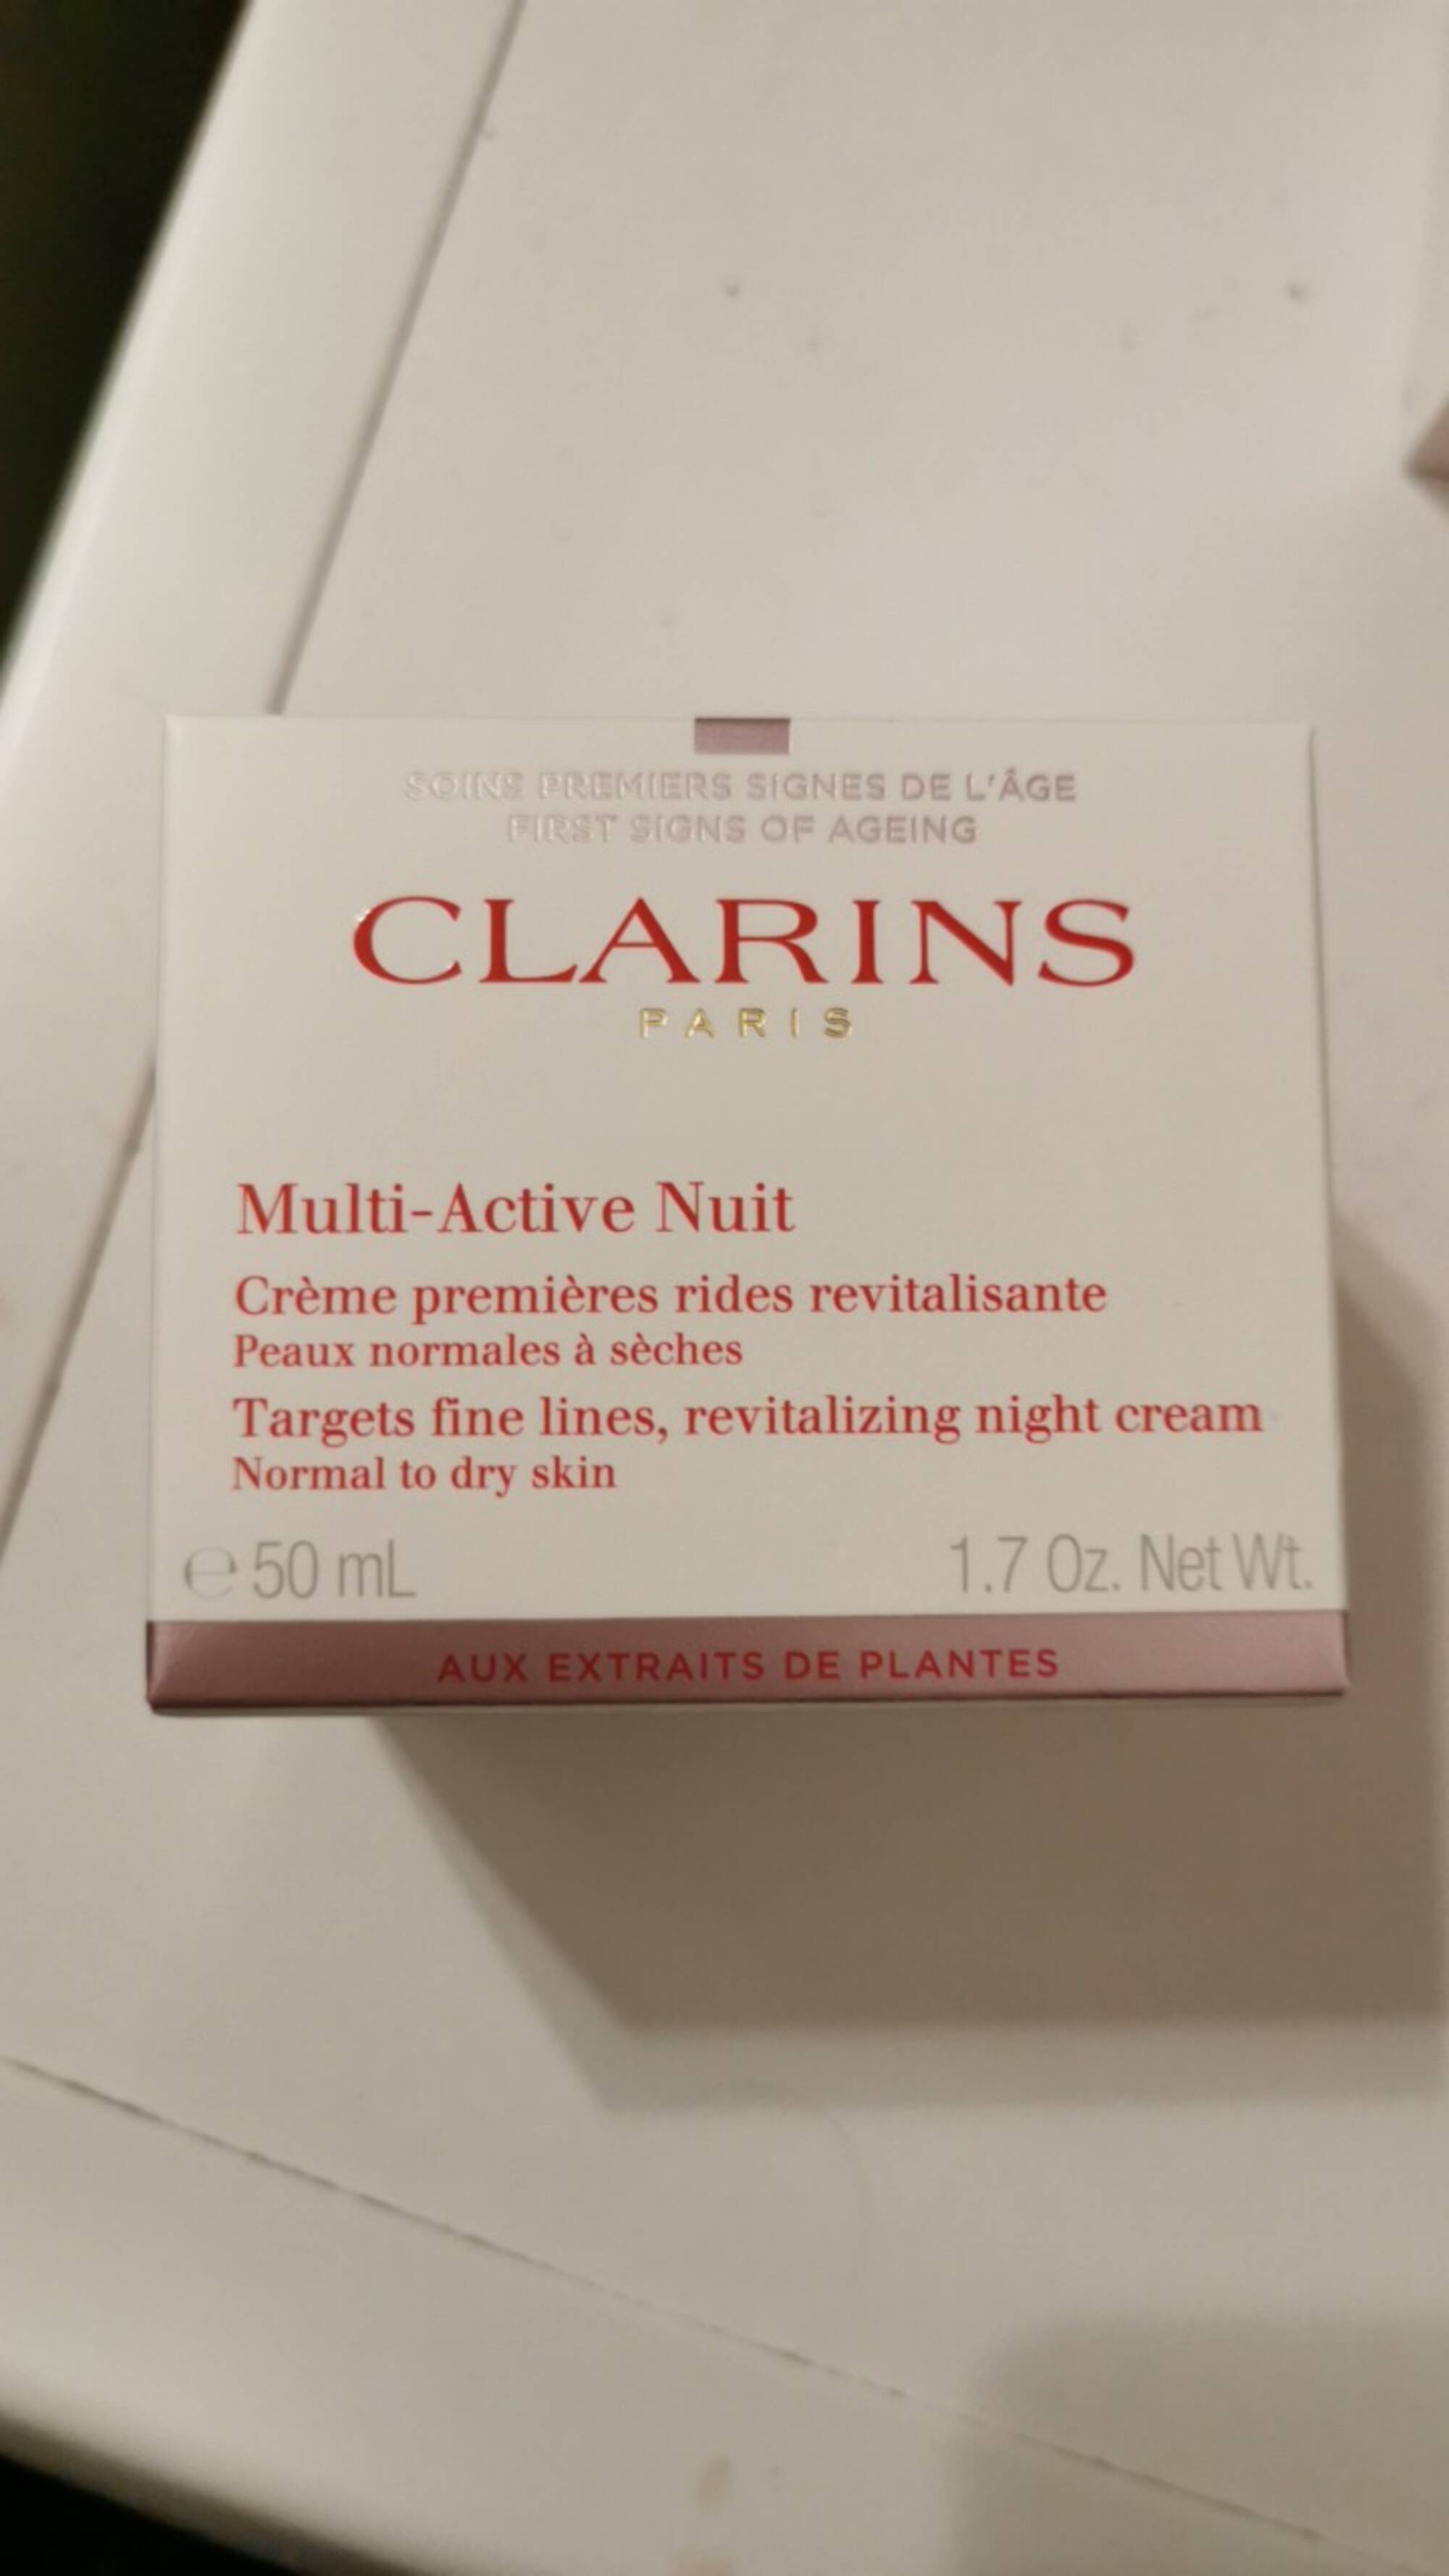 CLARINS - Multi-active nuit - Crème premières rides revitalisante